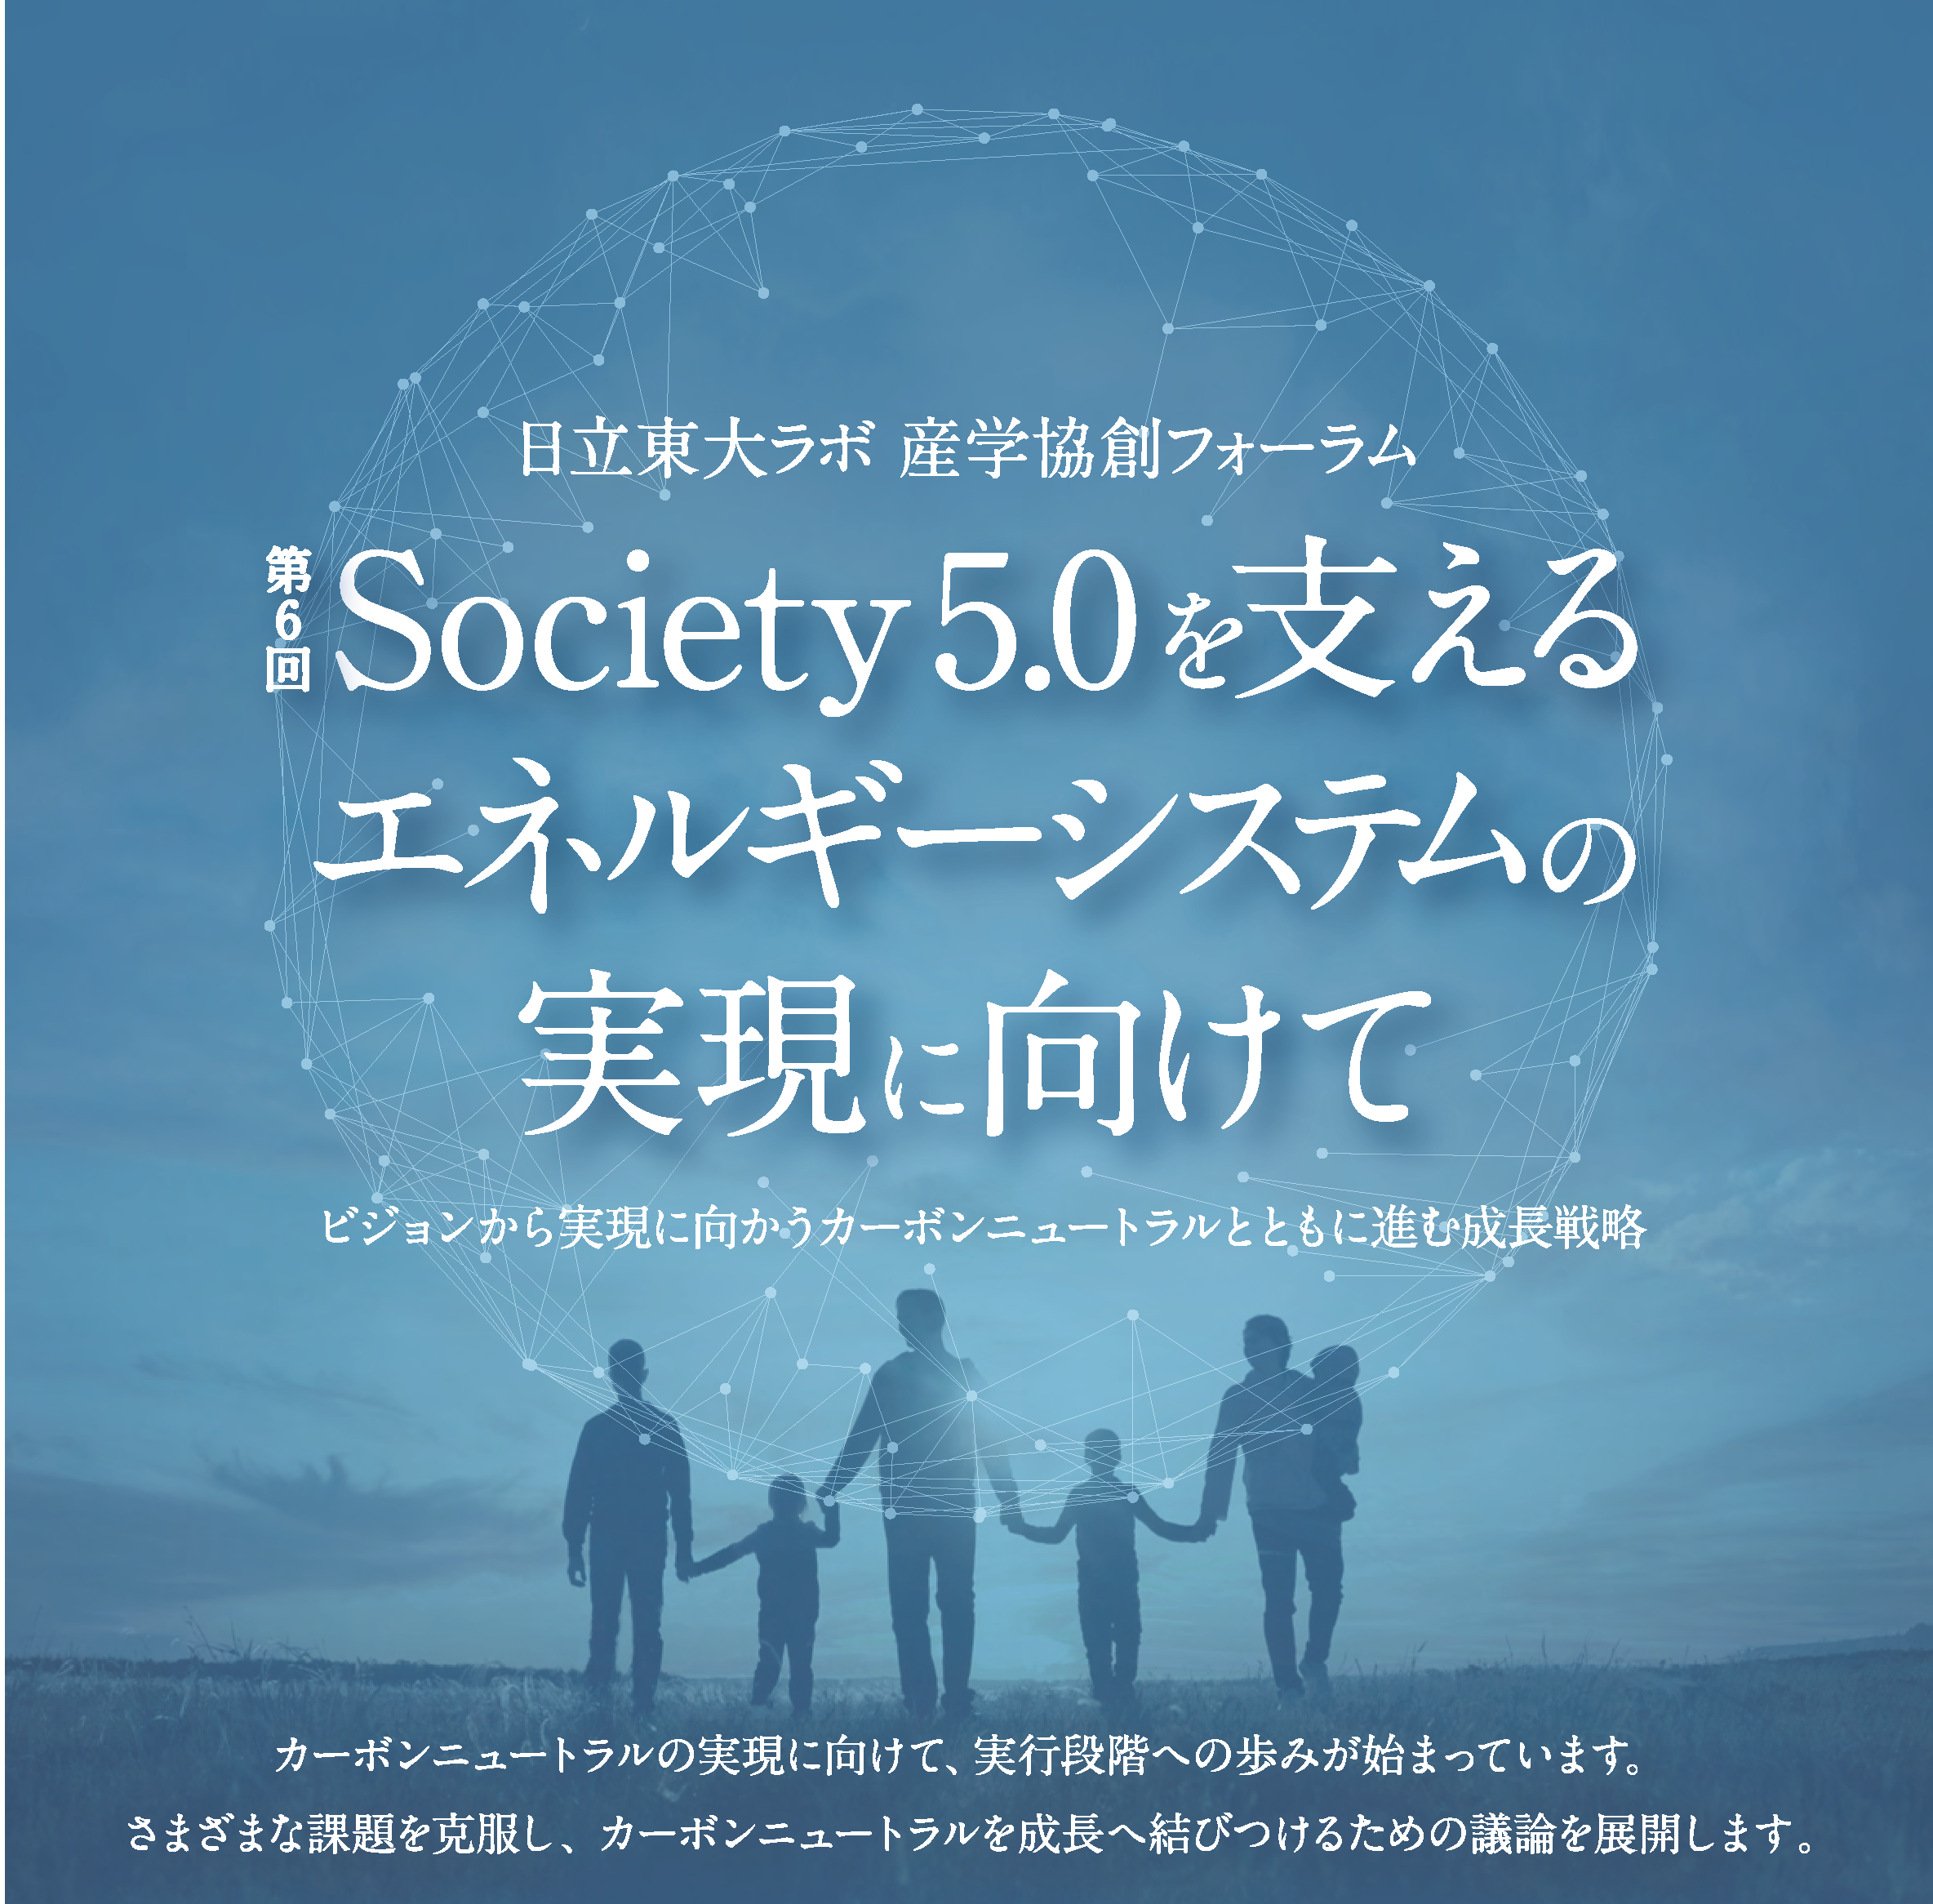 日立東大ラボ・産学協創フォーラム 「第6回 Society 5.0を支えるエネルギーシステムの実現に向けて」を 開催しました。